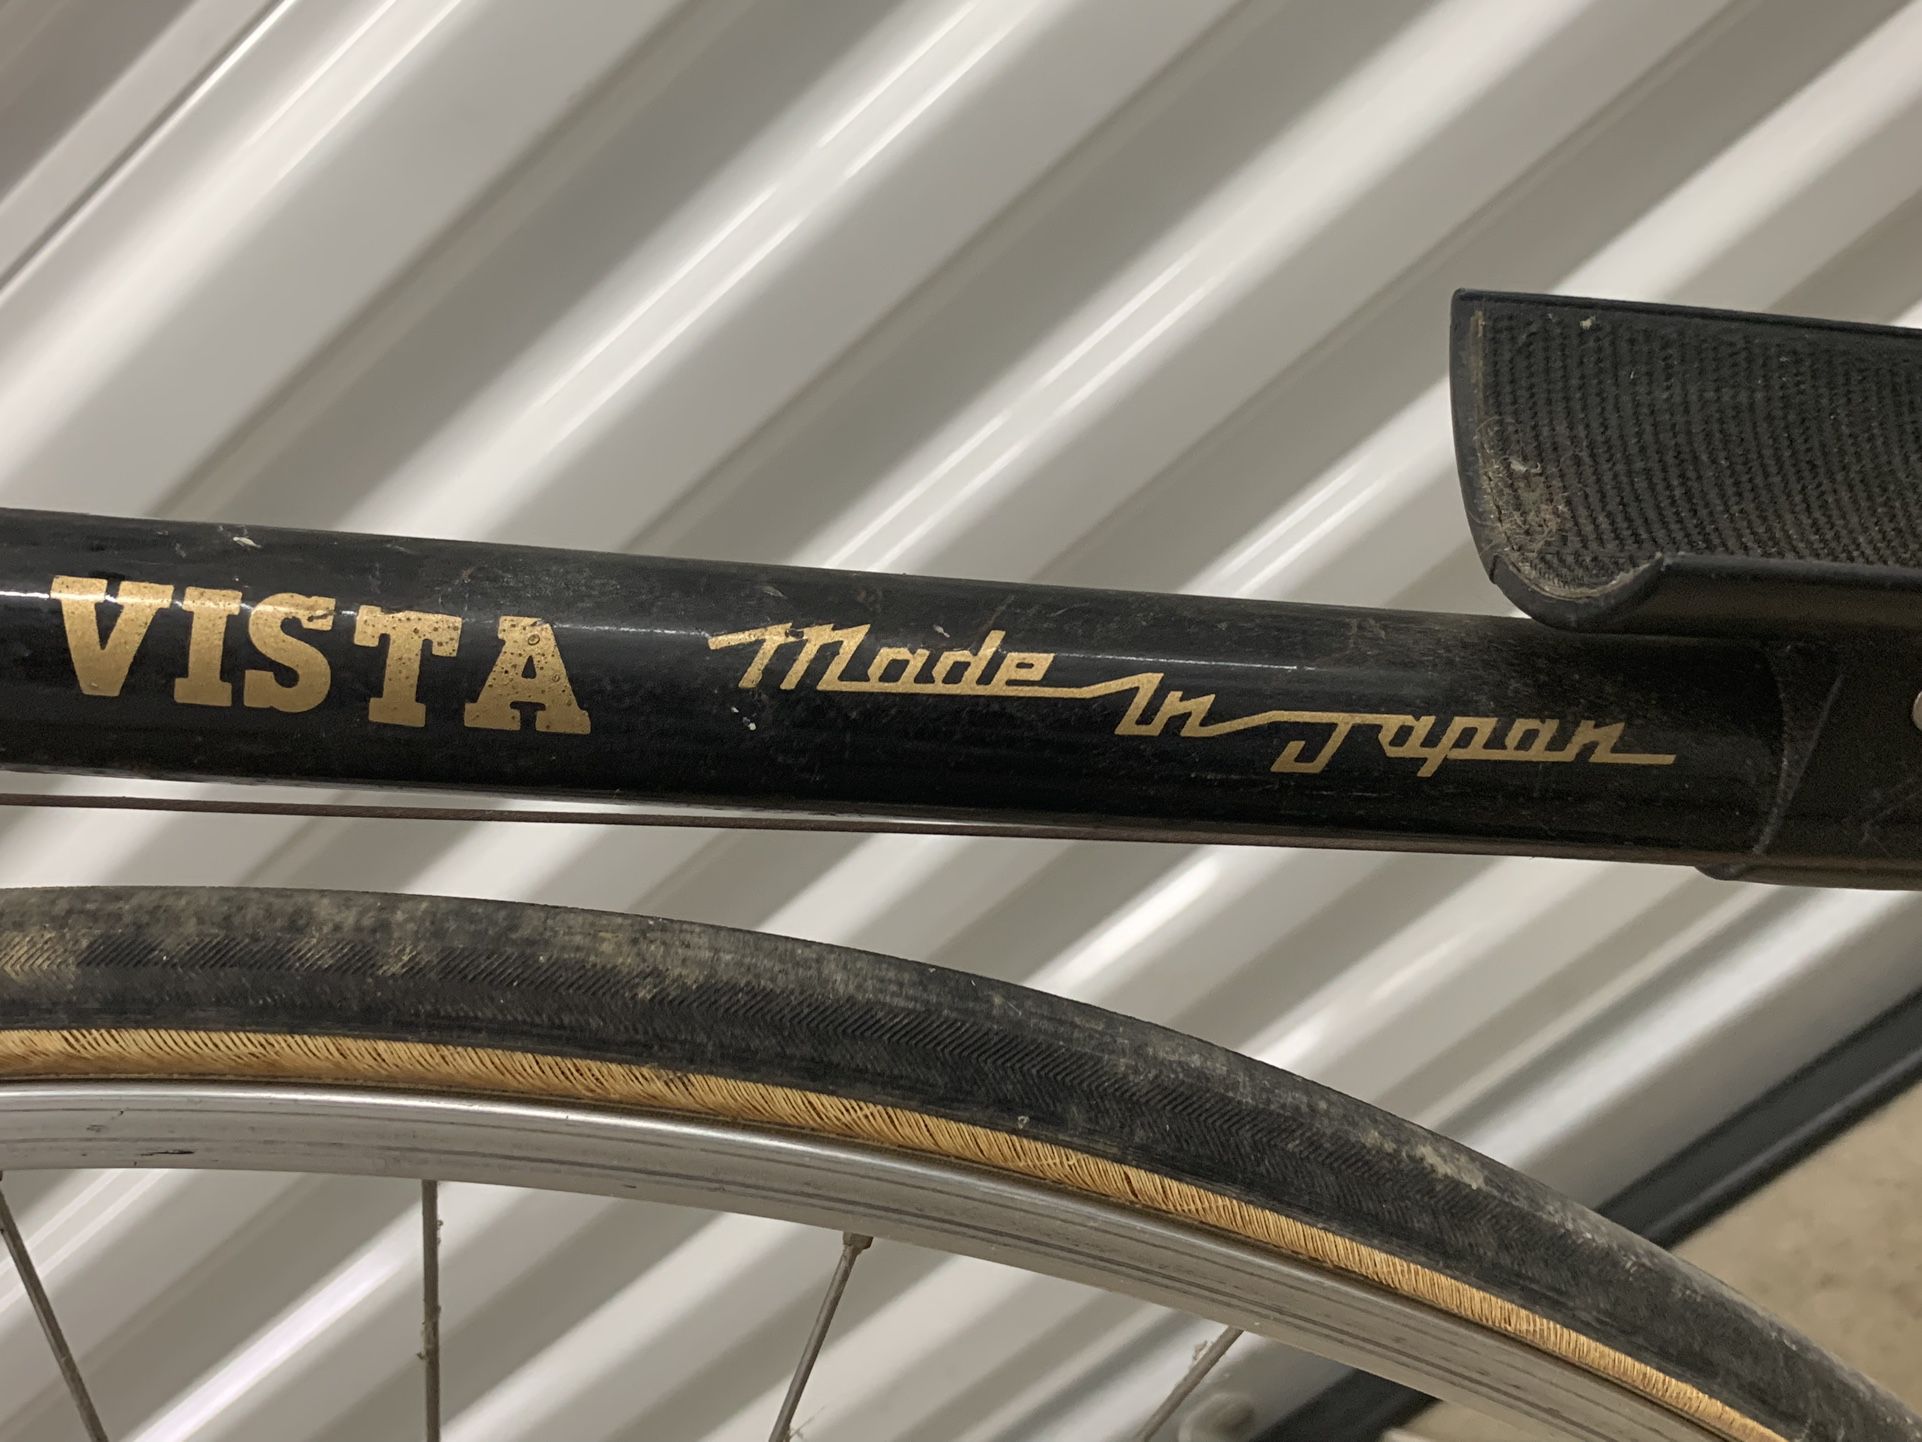 Vintage 80’s Bicycle Vista Elite Made InJapan